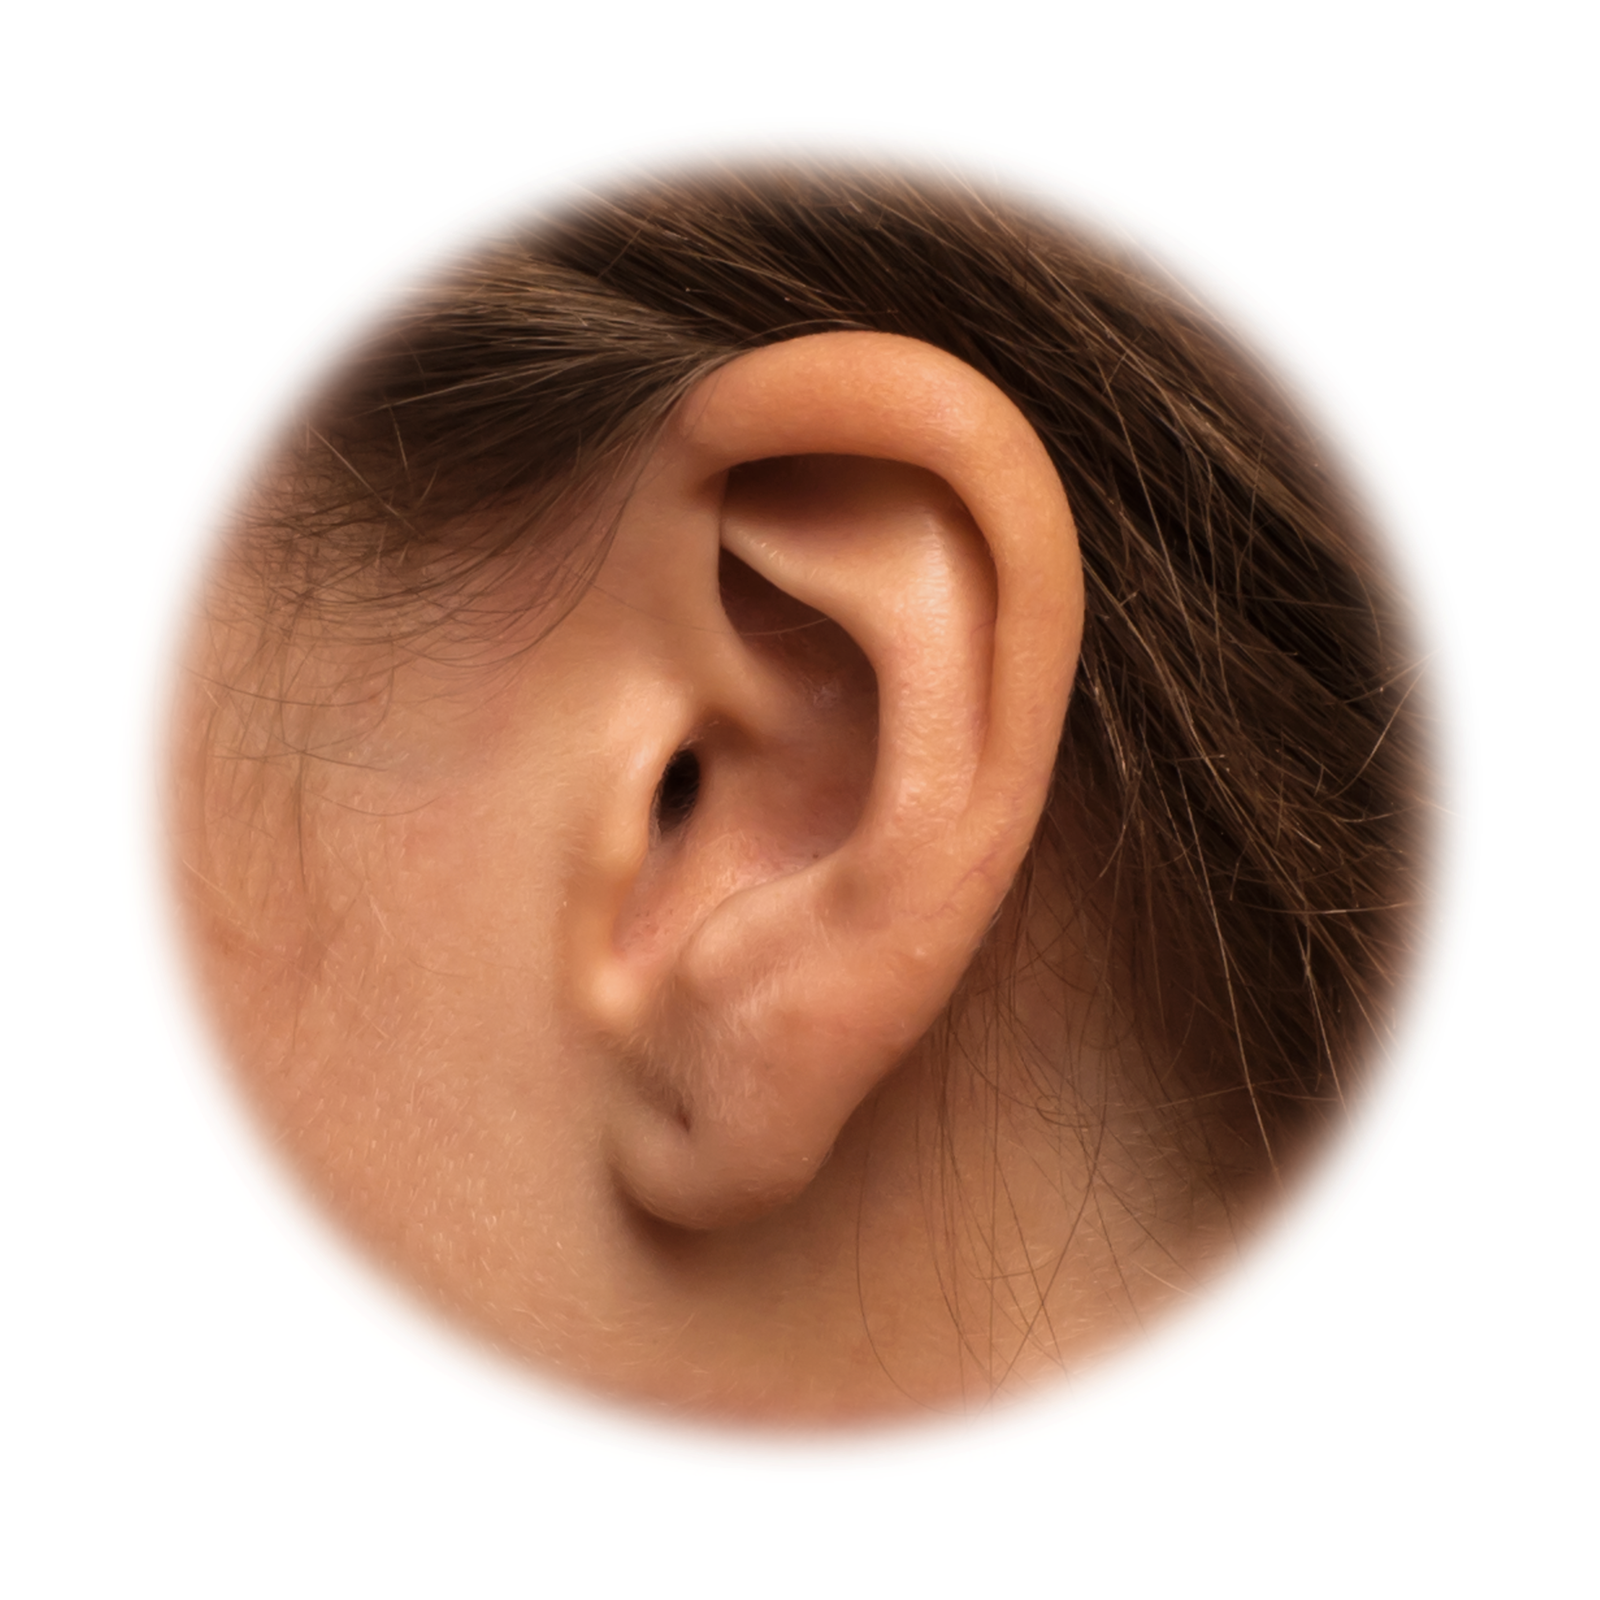 Fotografia przedstawia zbliżenie na ludzkie ucho. Dzięki umiejscowieniu uszu po przeciwnych stronach głowy możemy ocenić, z którego kierunku dociera do nas dźwięk.